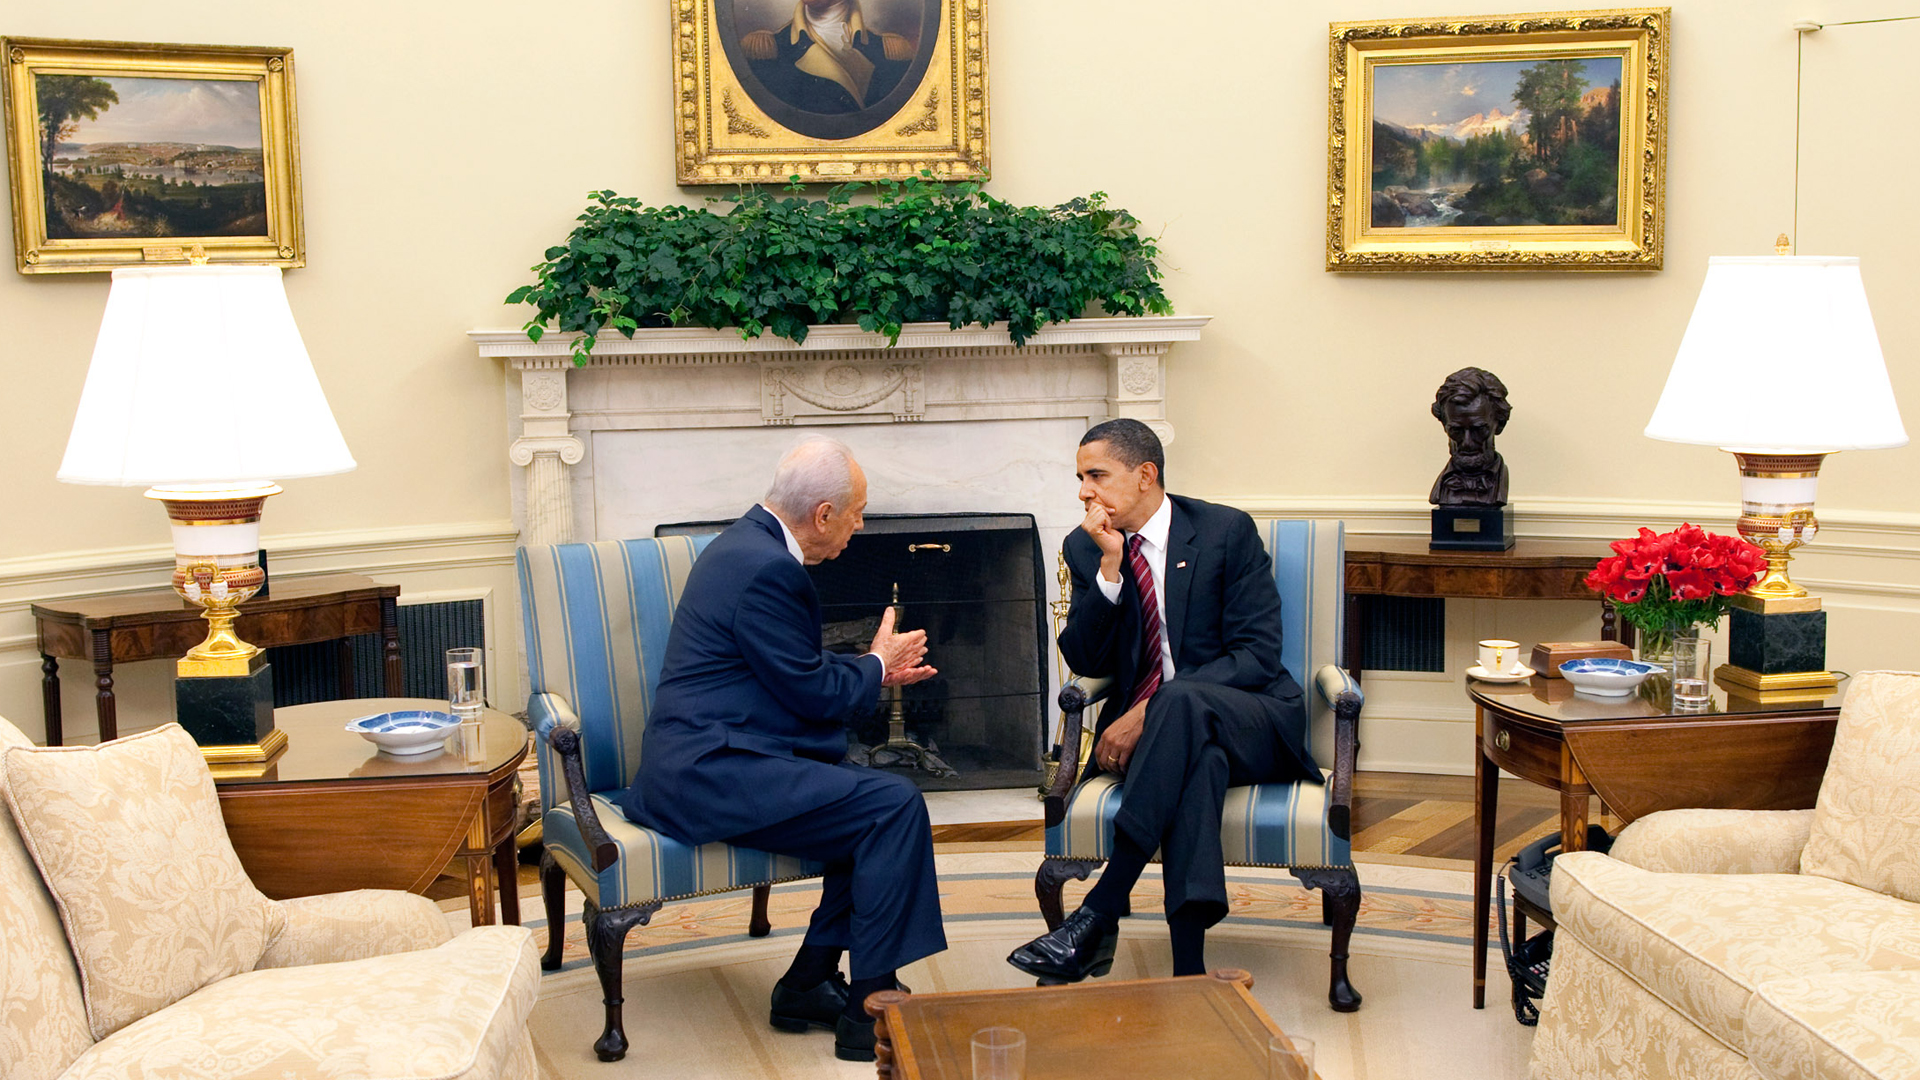 5. Mai 2009: angeregtes Gespräch zwischen dem damaligen israelischen Staatspräsidenten Schimon Peres und Barack Obama in Washington